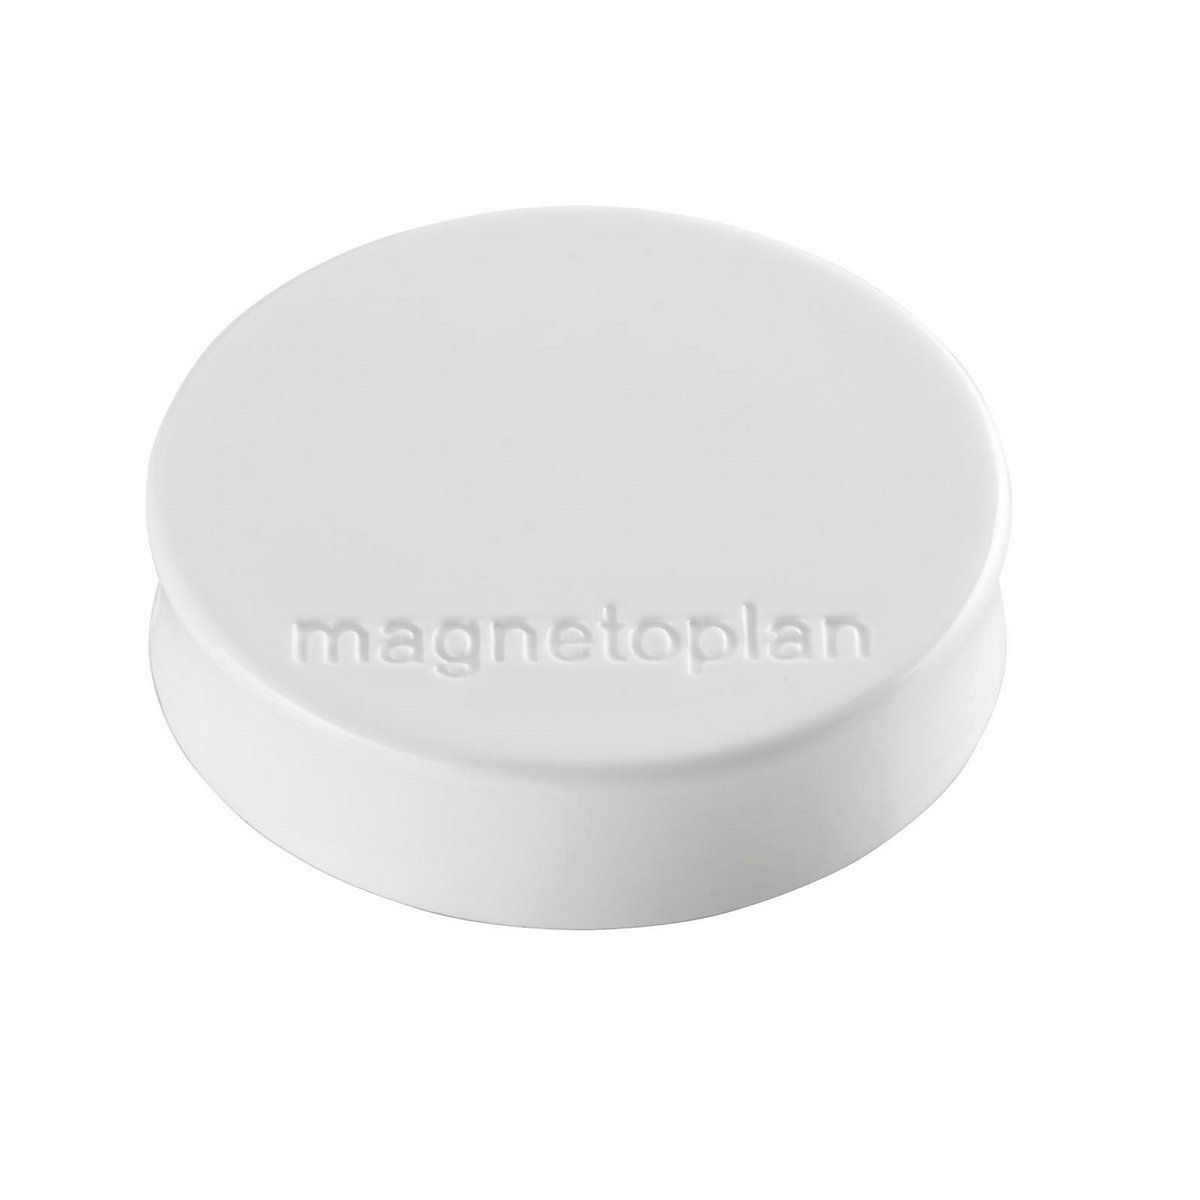 Ergo magnet – magnetoplan, Ø 30 mm, pack of 60, white-12